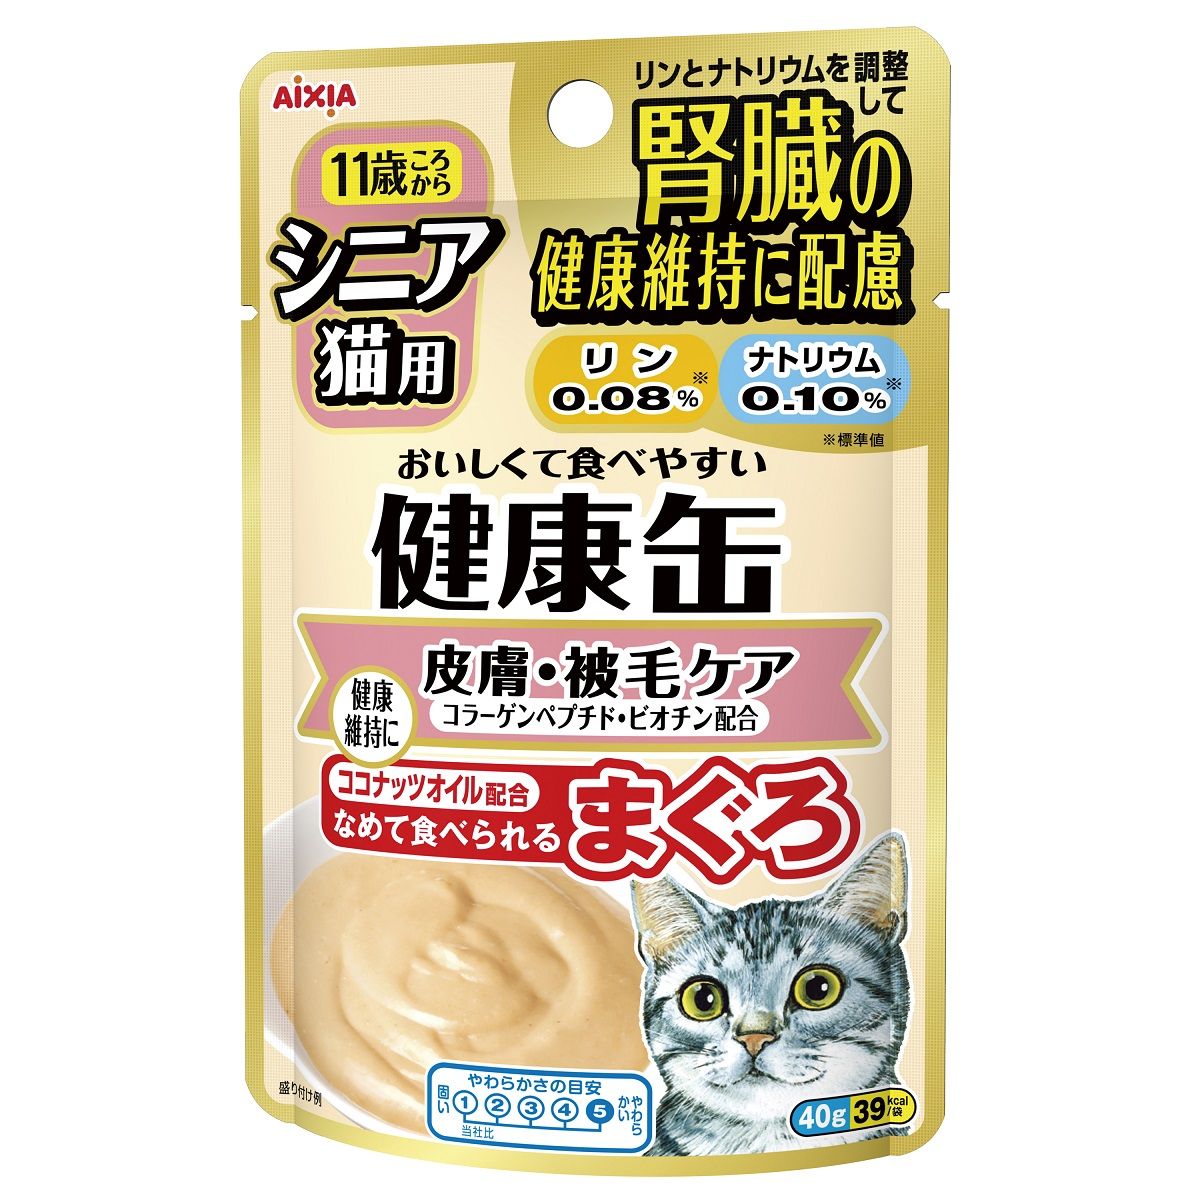 シニア猫用 健康缶パウチ皮膚・被毛ケア40g×48